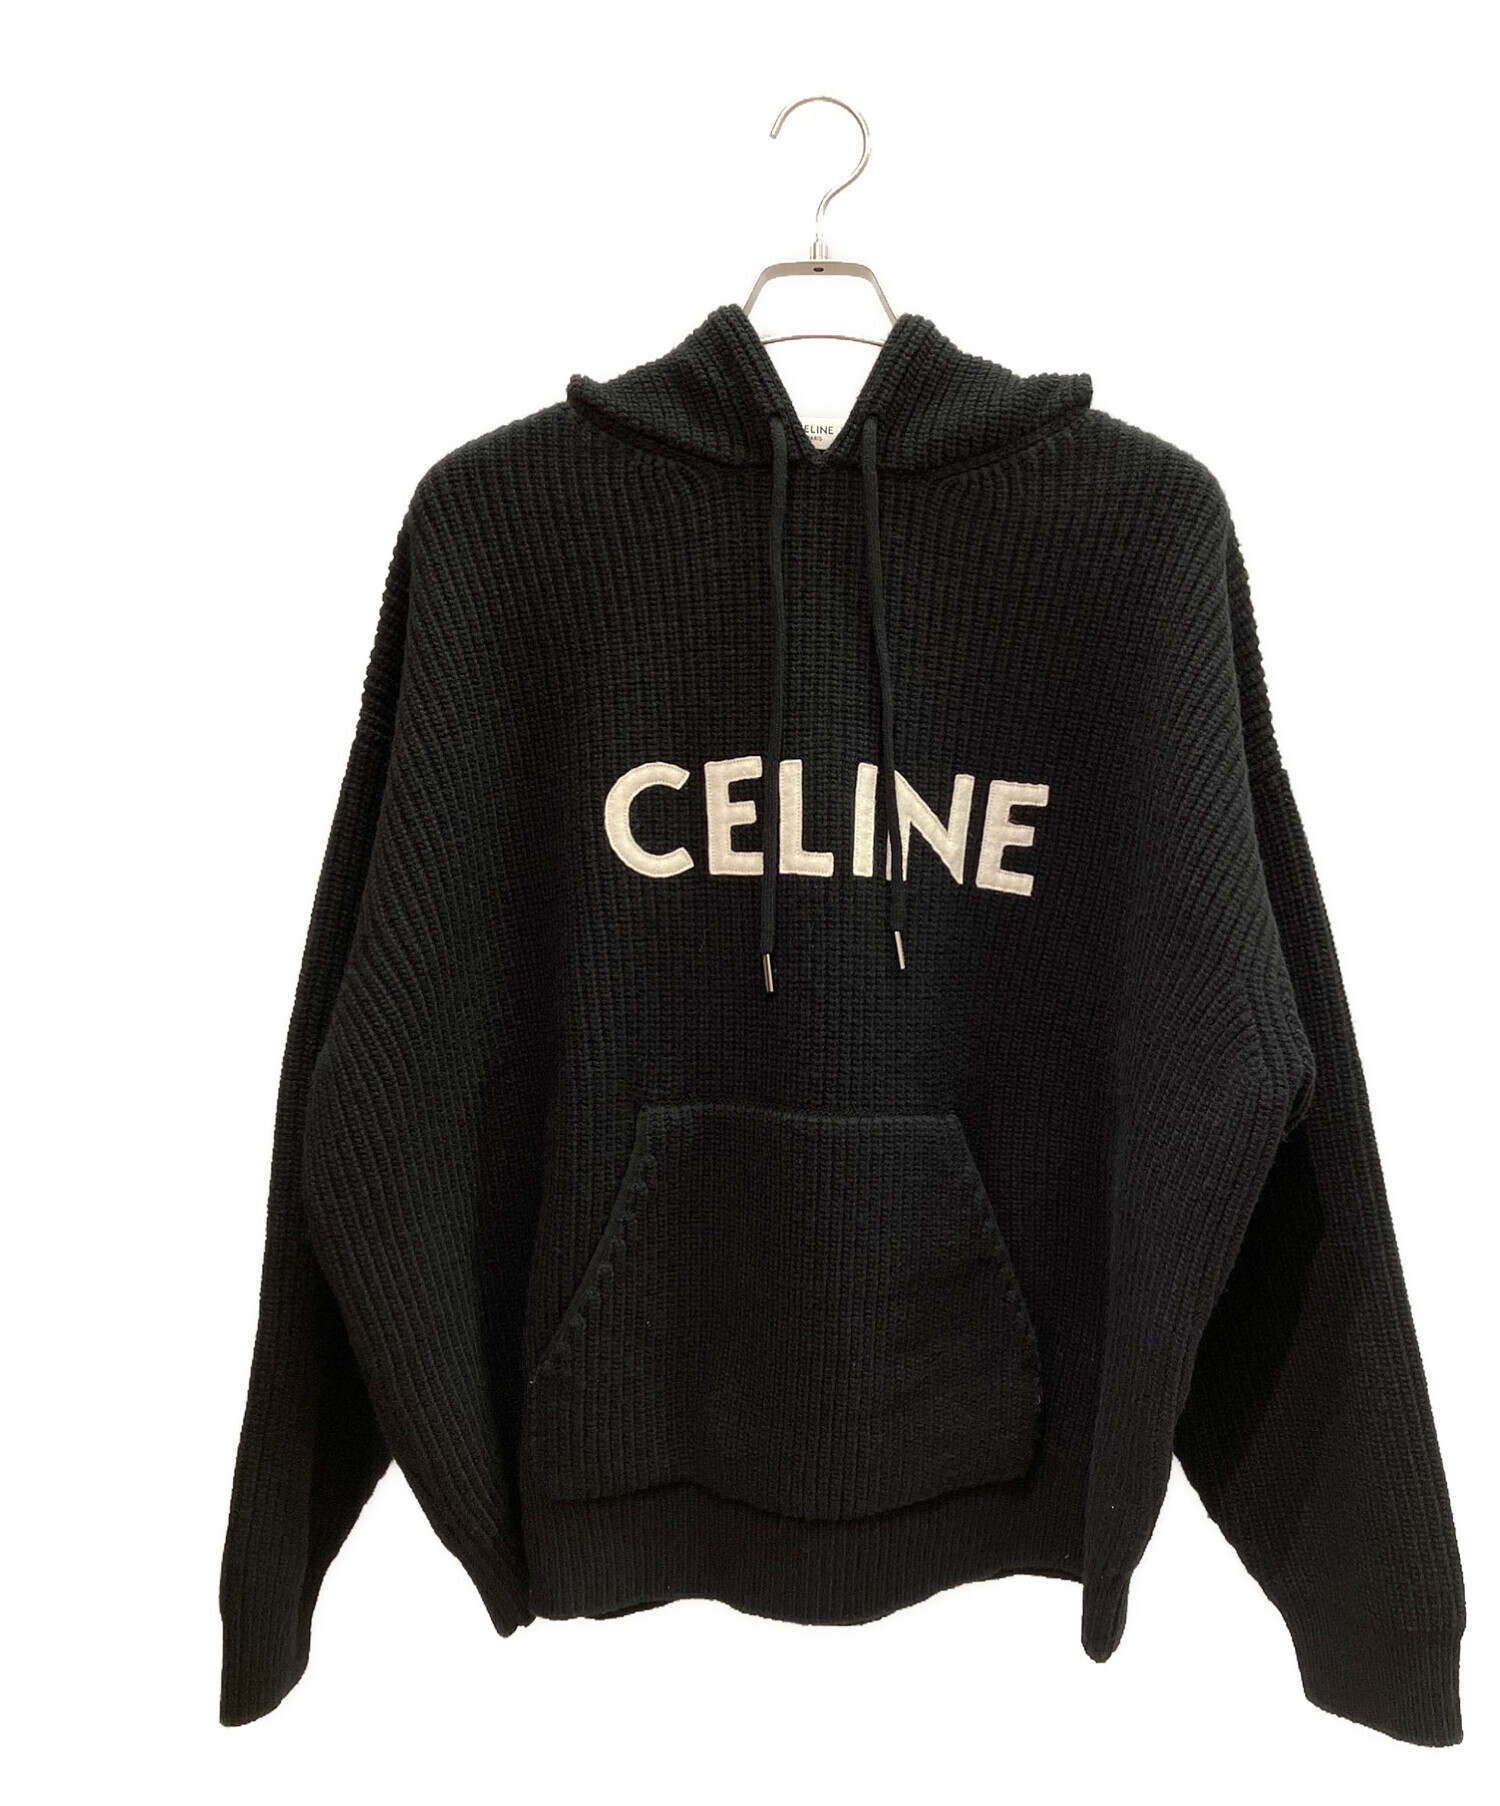 CELINE セリーヌ フードセーター リブ編みウール パーカー Mサイズ198000円